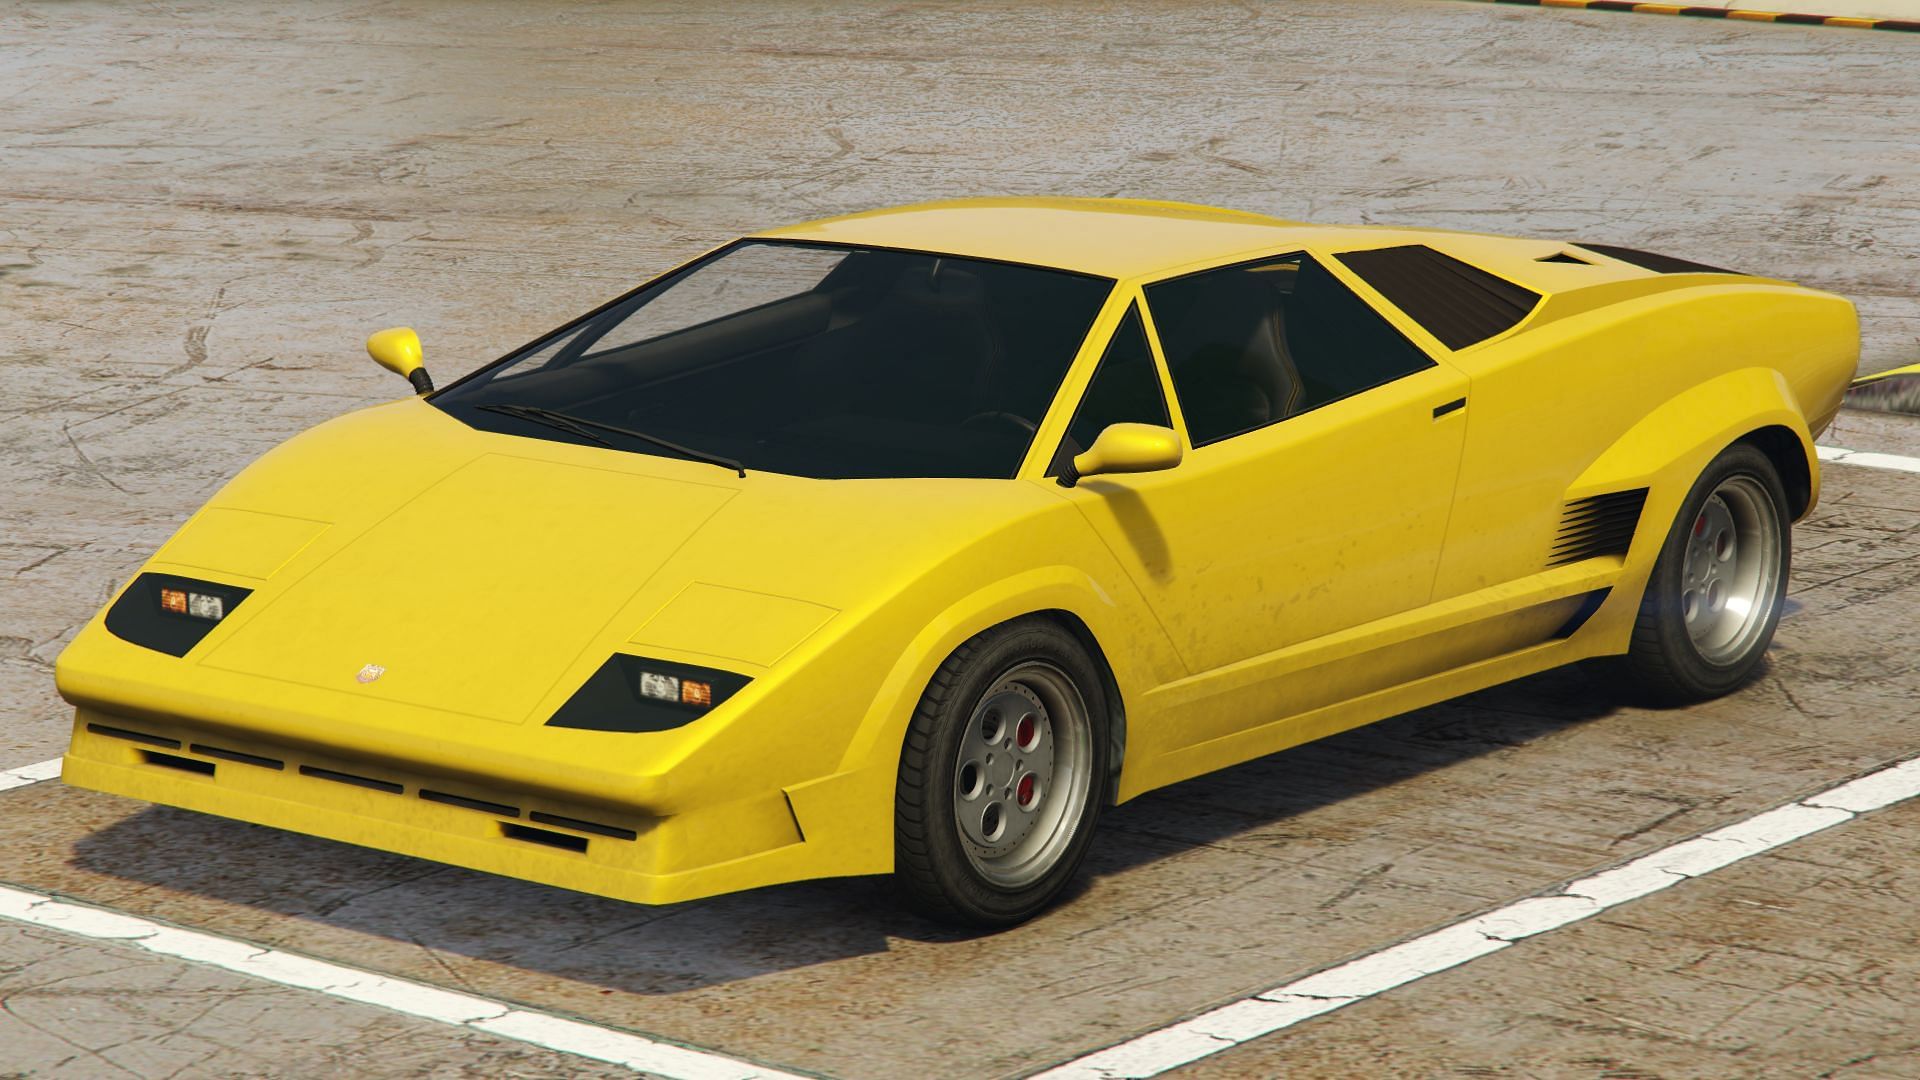 На этой неделе игроки GTA Online могут получить этот автомобиль бесплатно (изображение Rockstar Games).